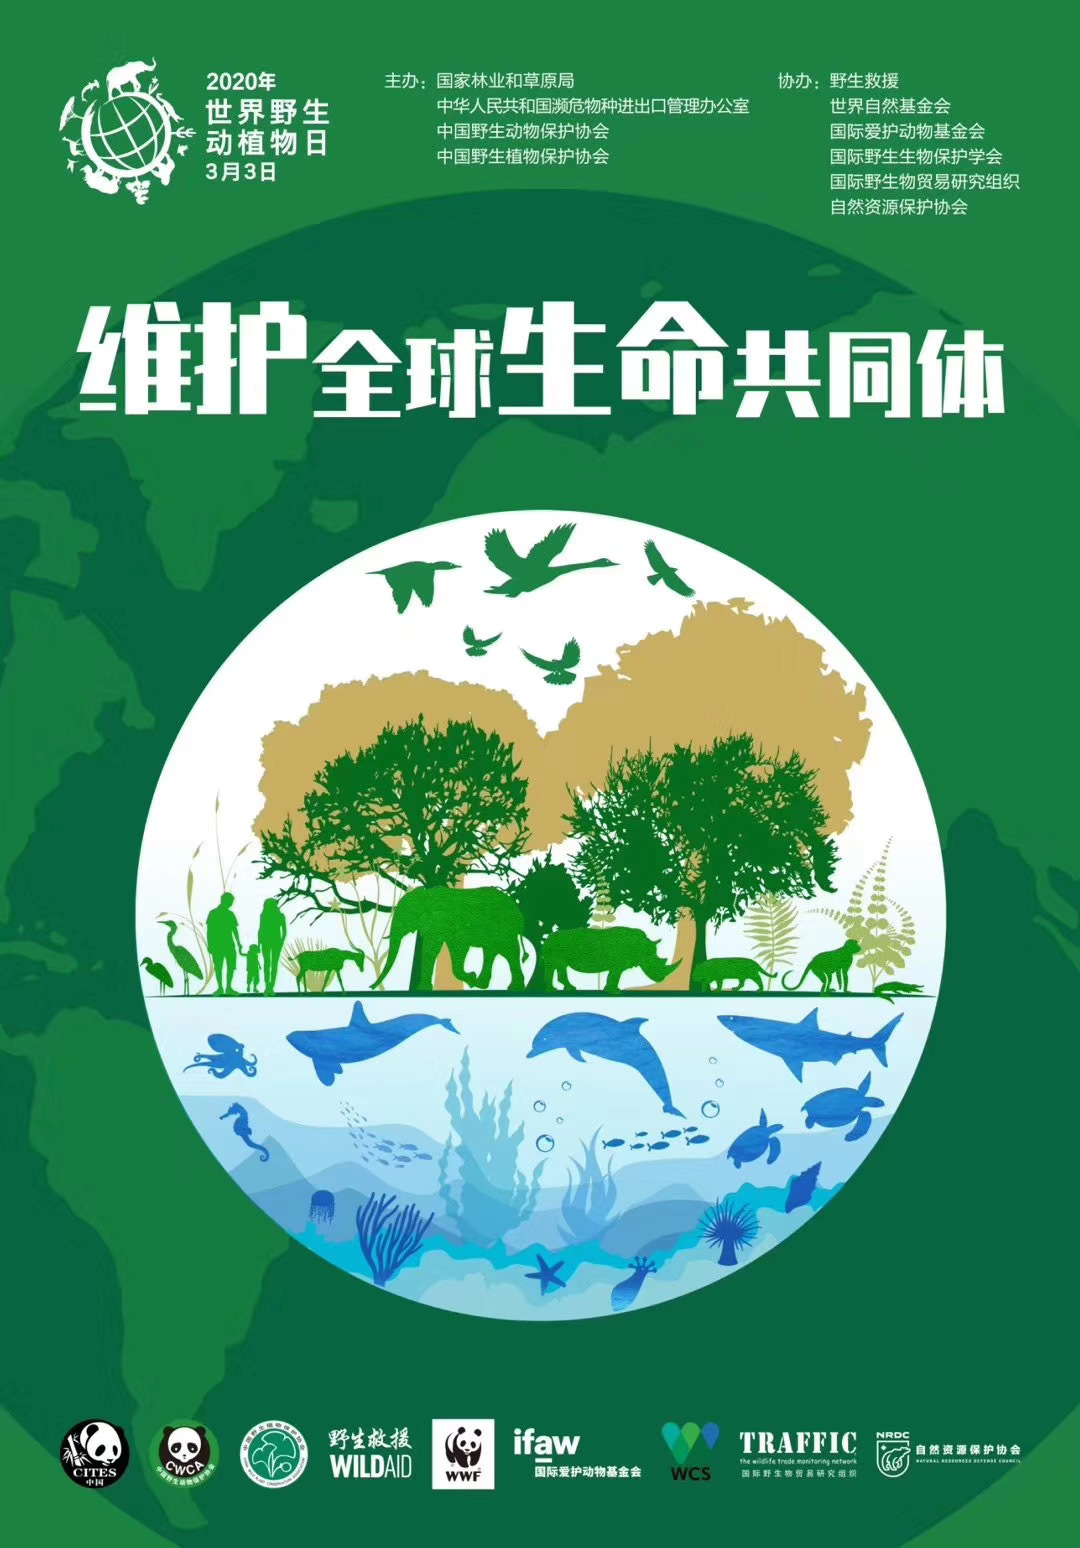 2021年“世界野生动植物日”主题宣传活动拉开帷幕_保护